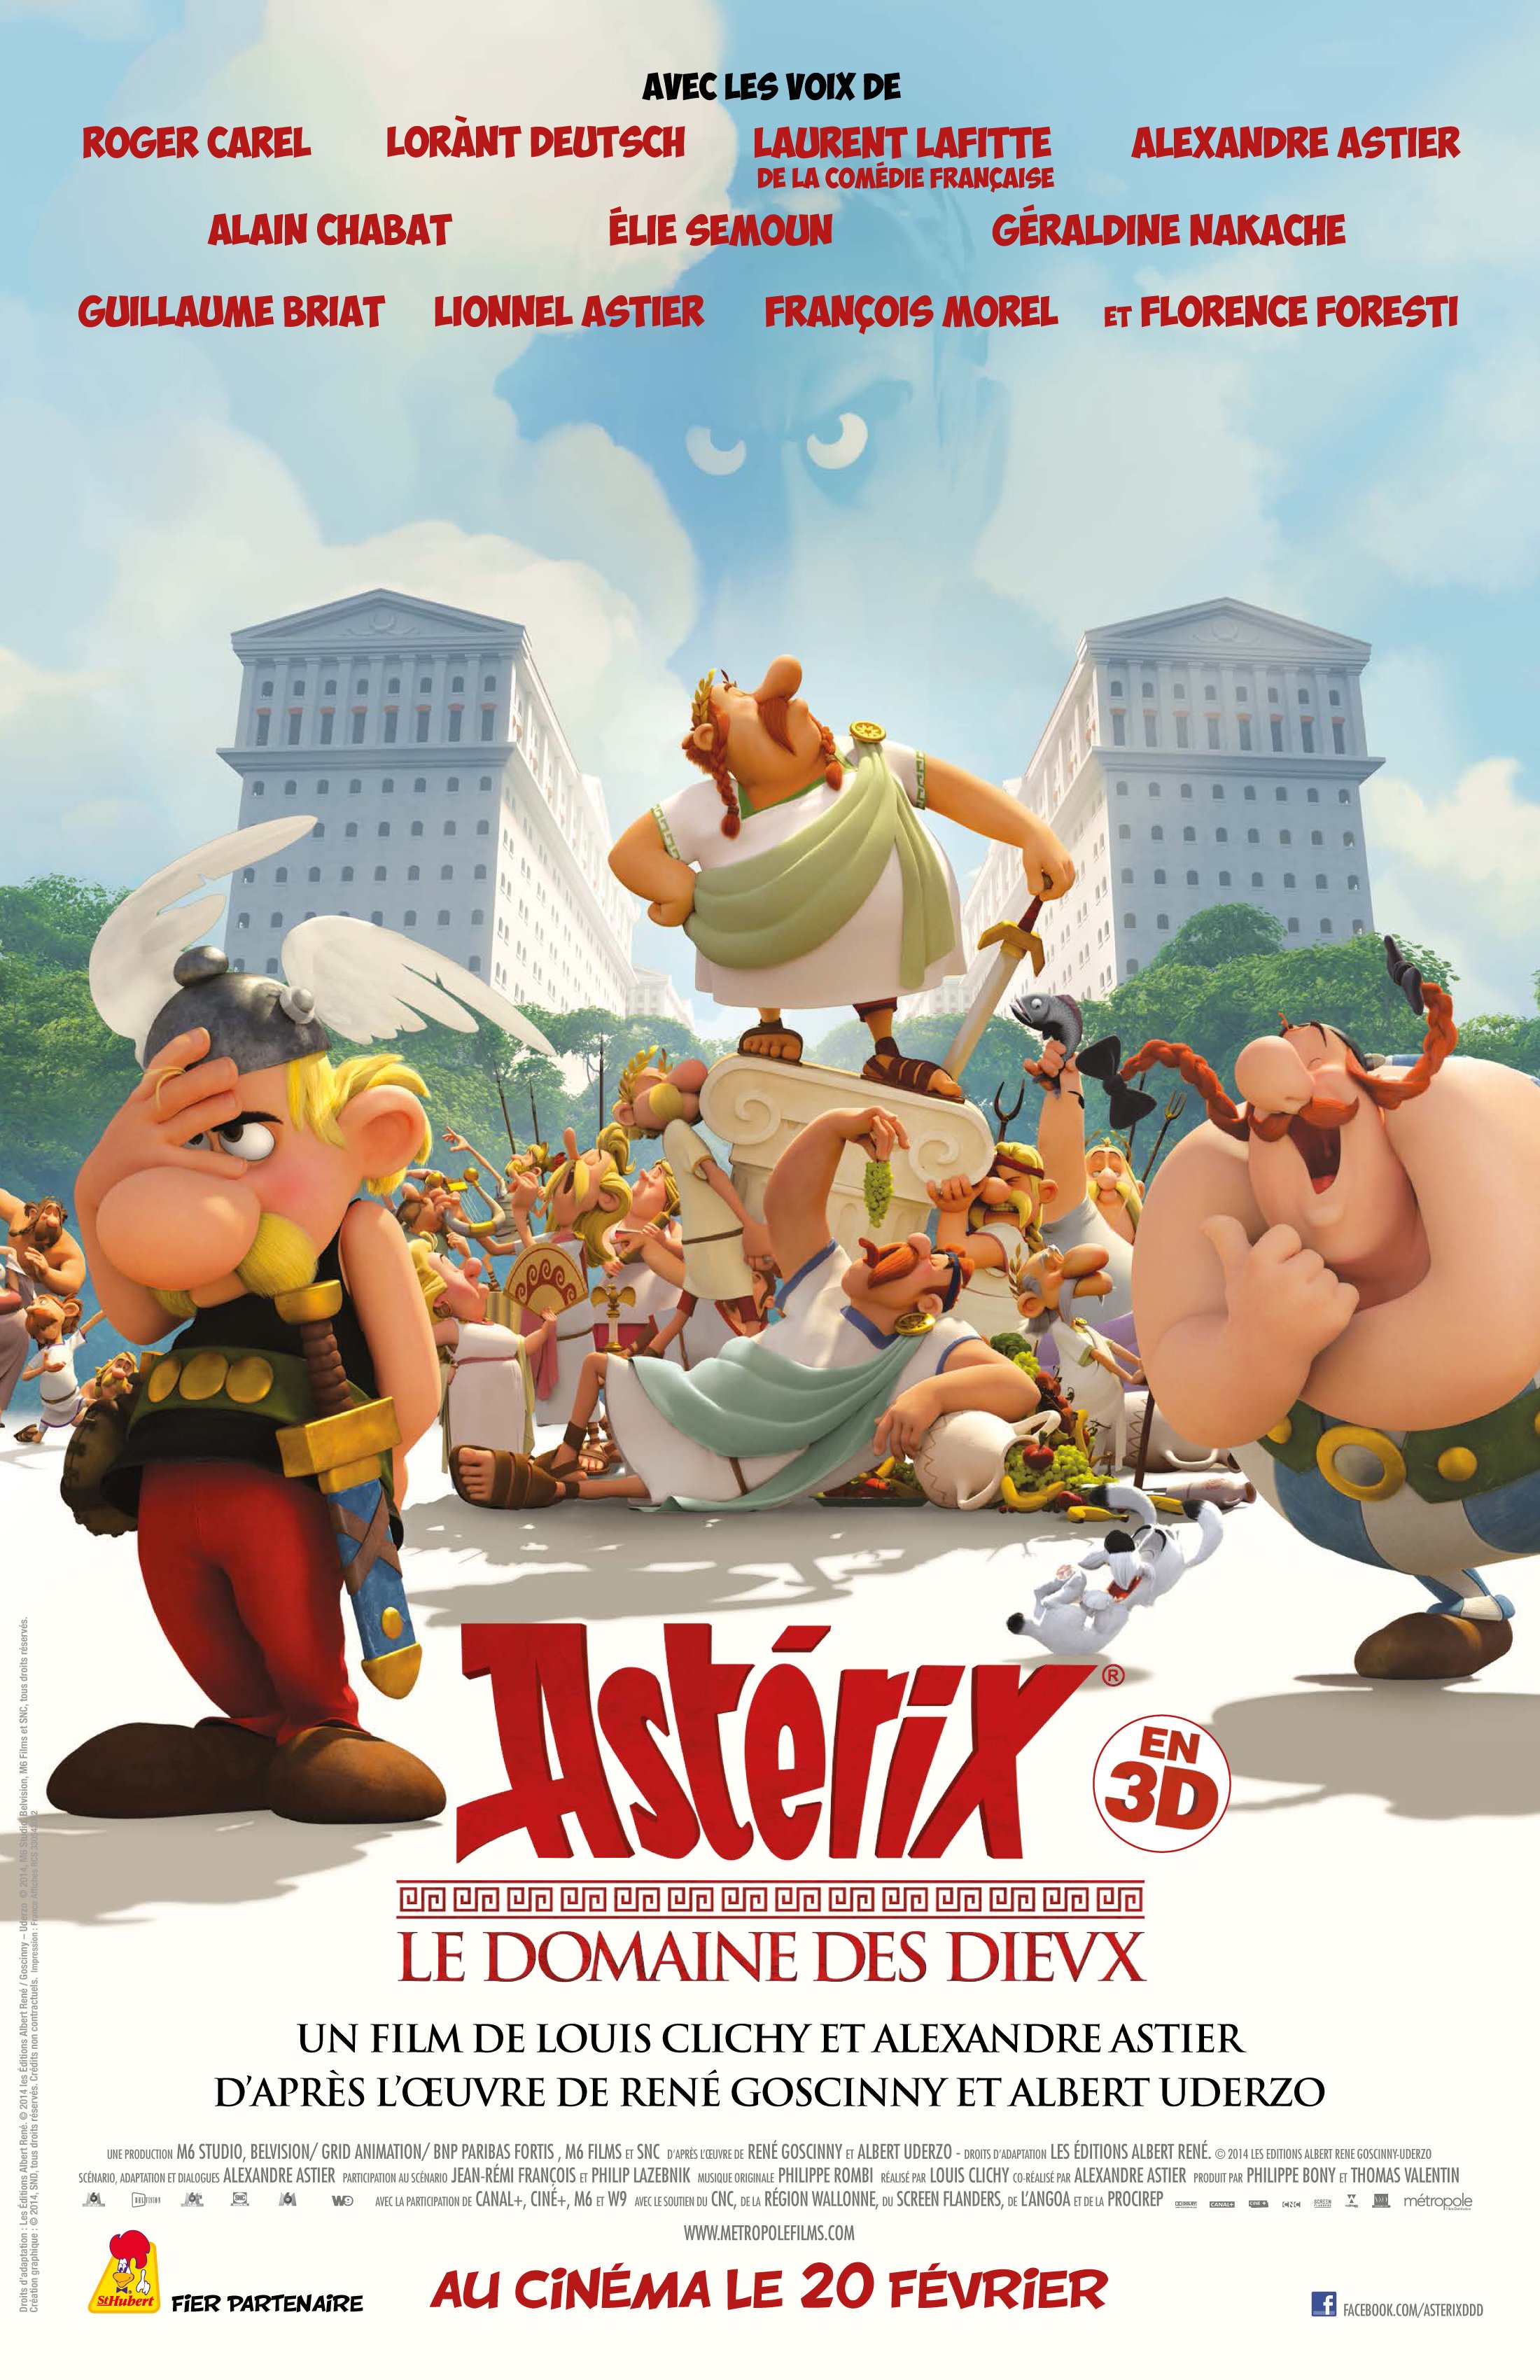 Poster of the movie Astérix: Le domaine des dieux